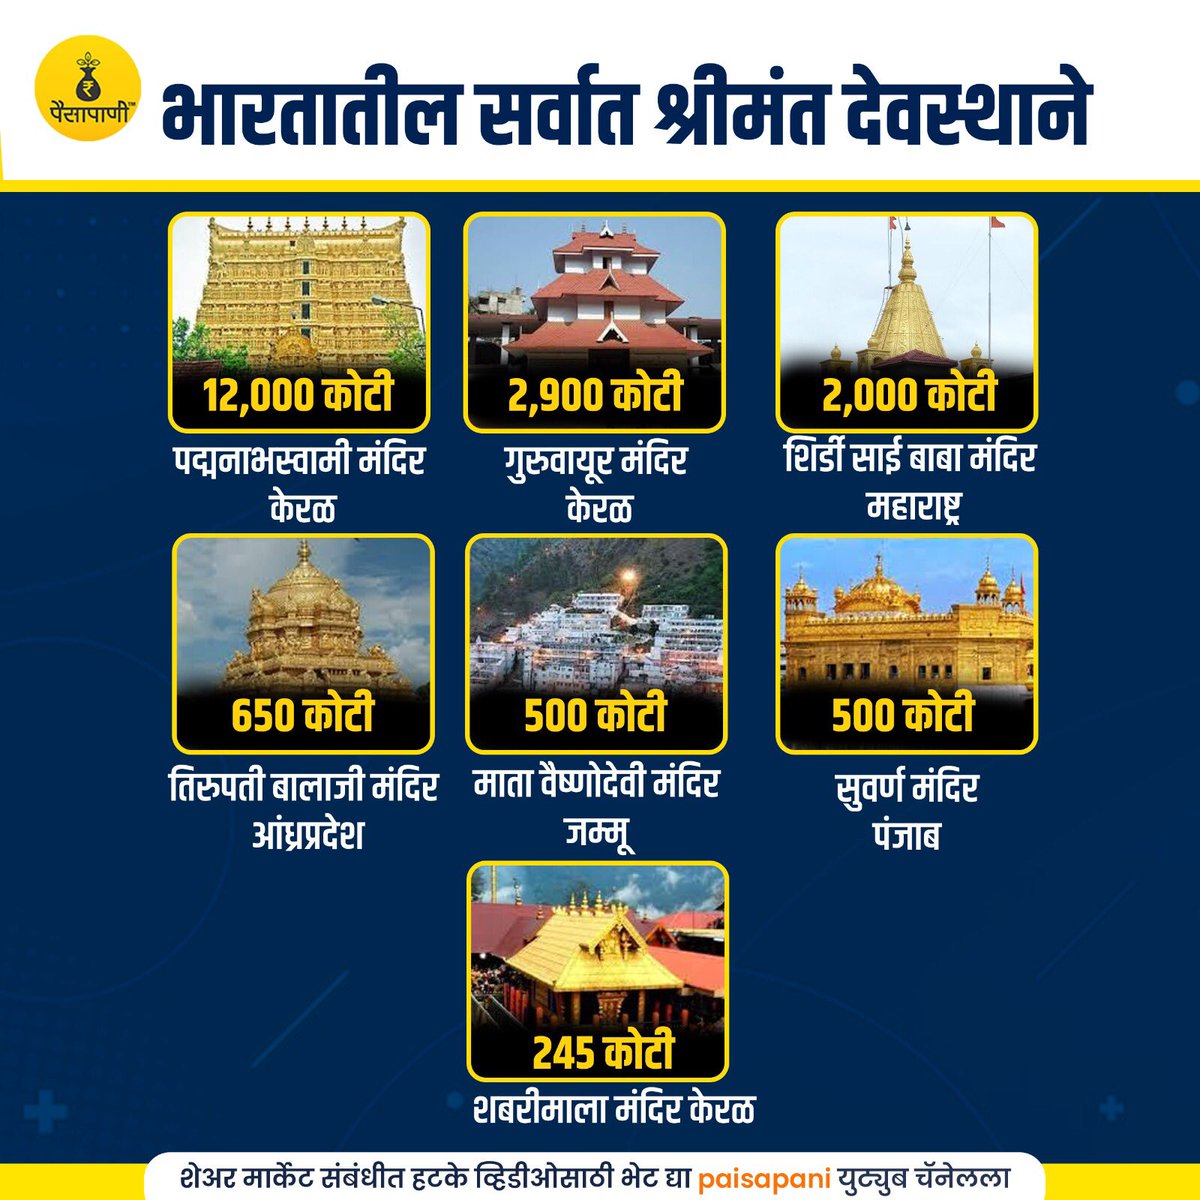 भारतातील सर्वात श्रीमंत देवस्थाने…! #Temple #MONEY